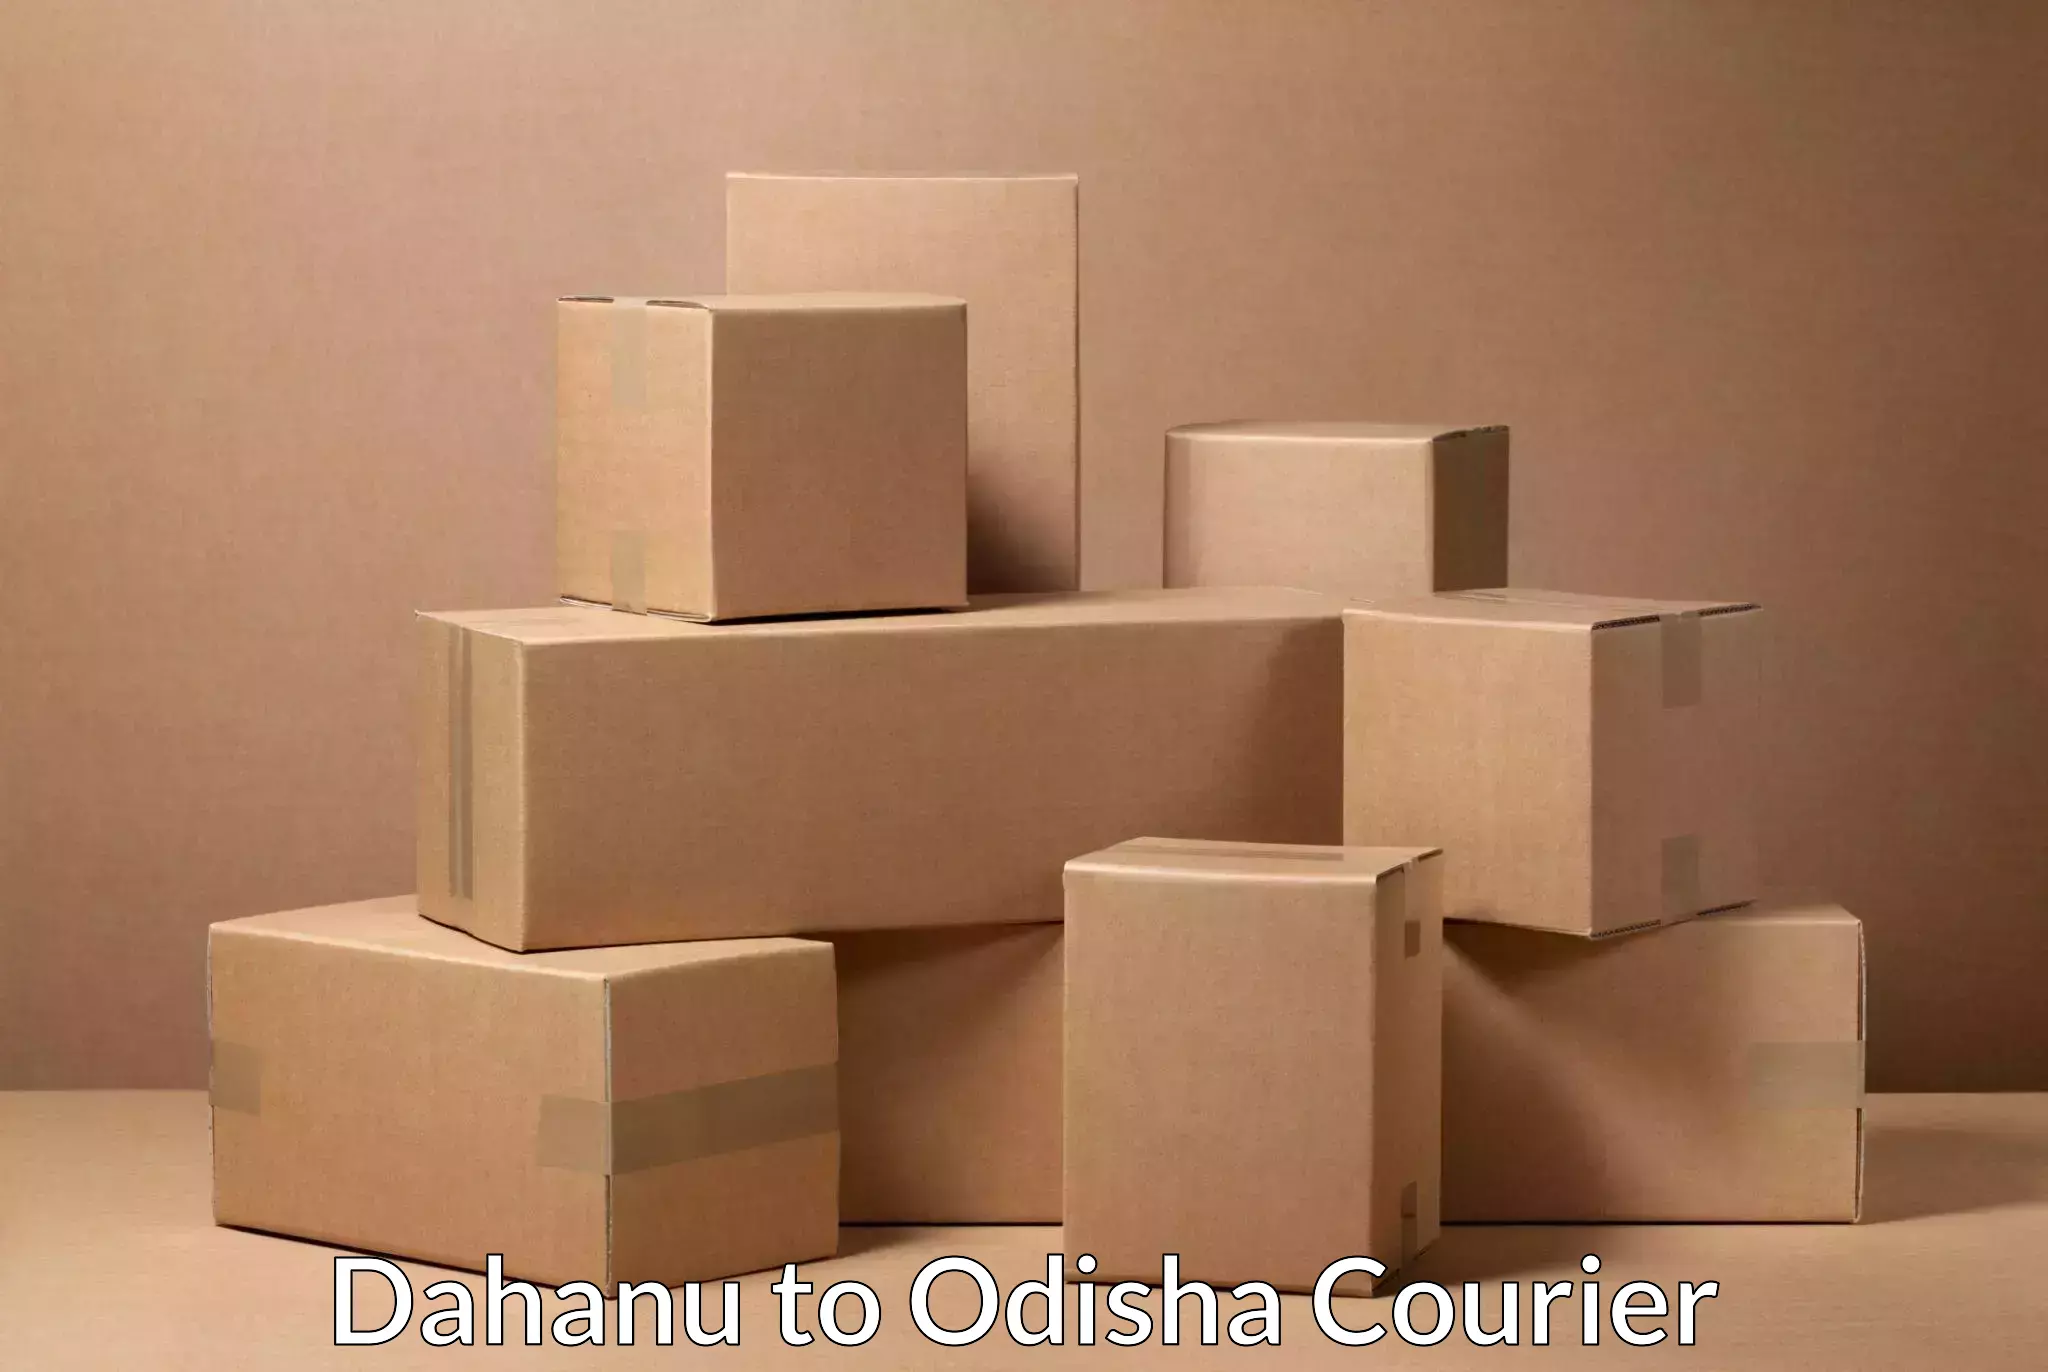 Global courier networks Dahanu to Sohela